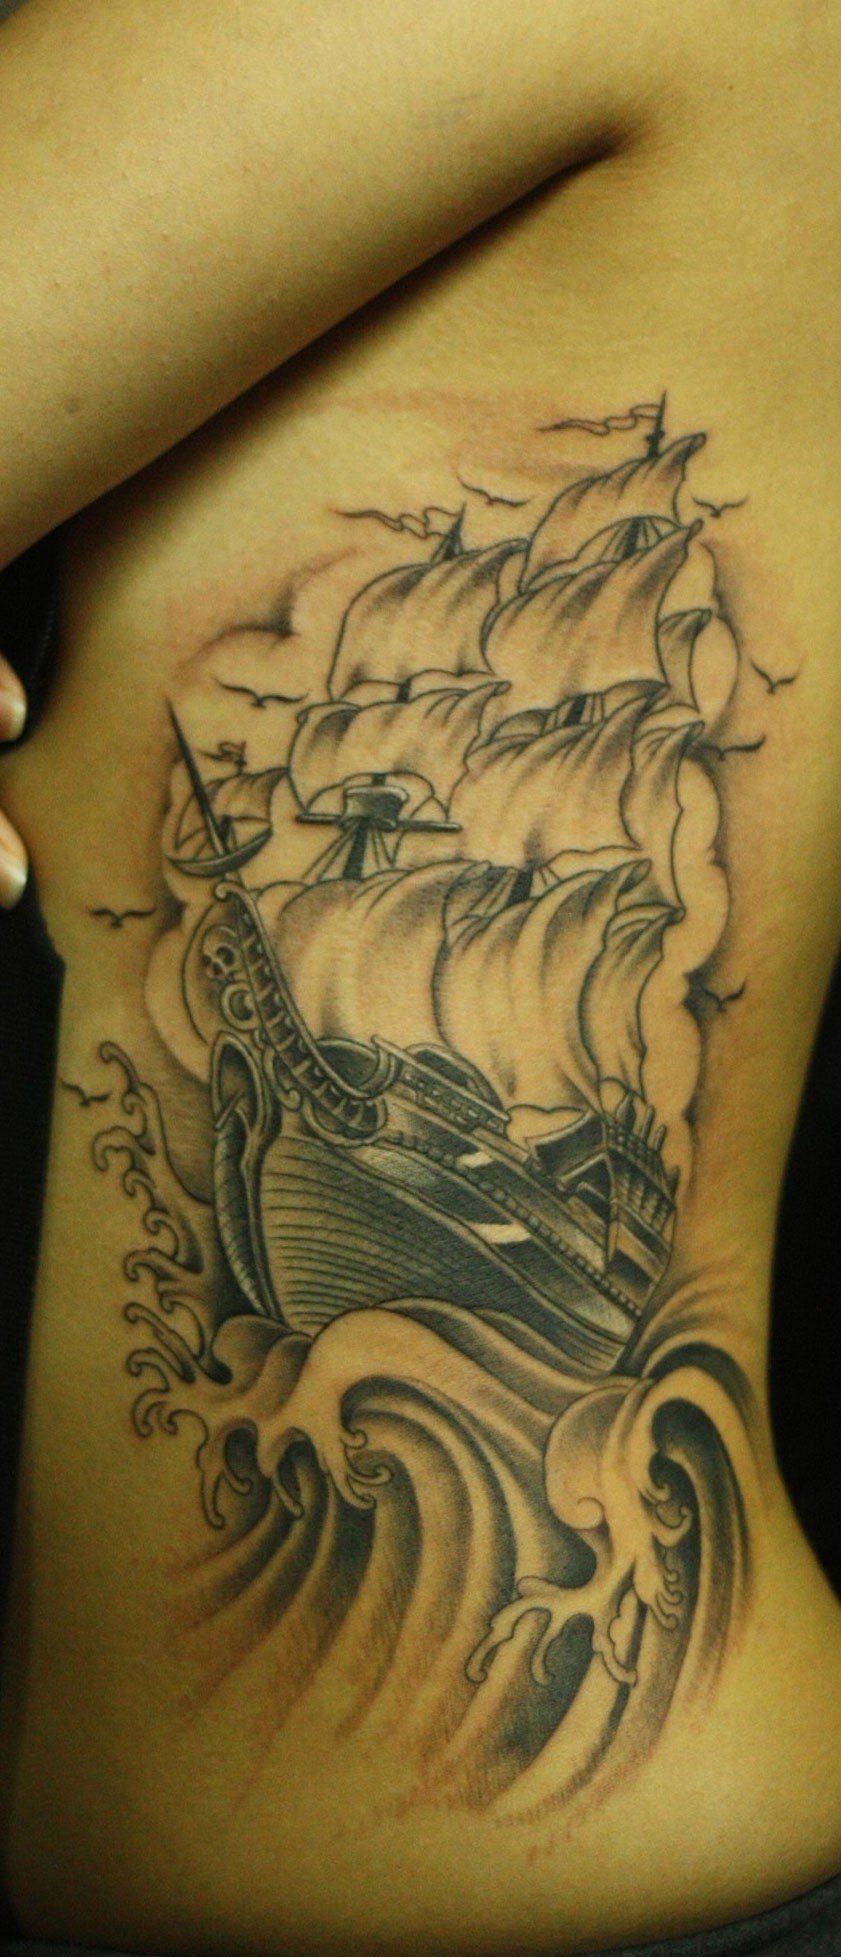 乘风破浪的大船和文字纹身图案